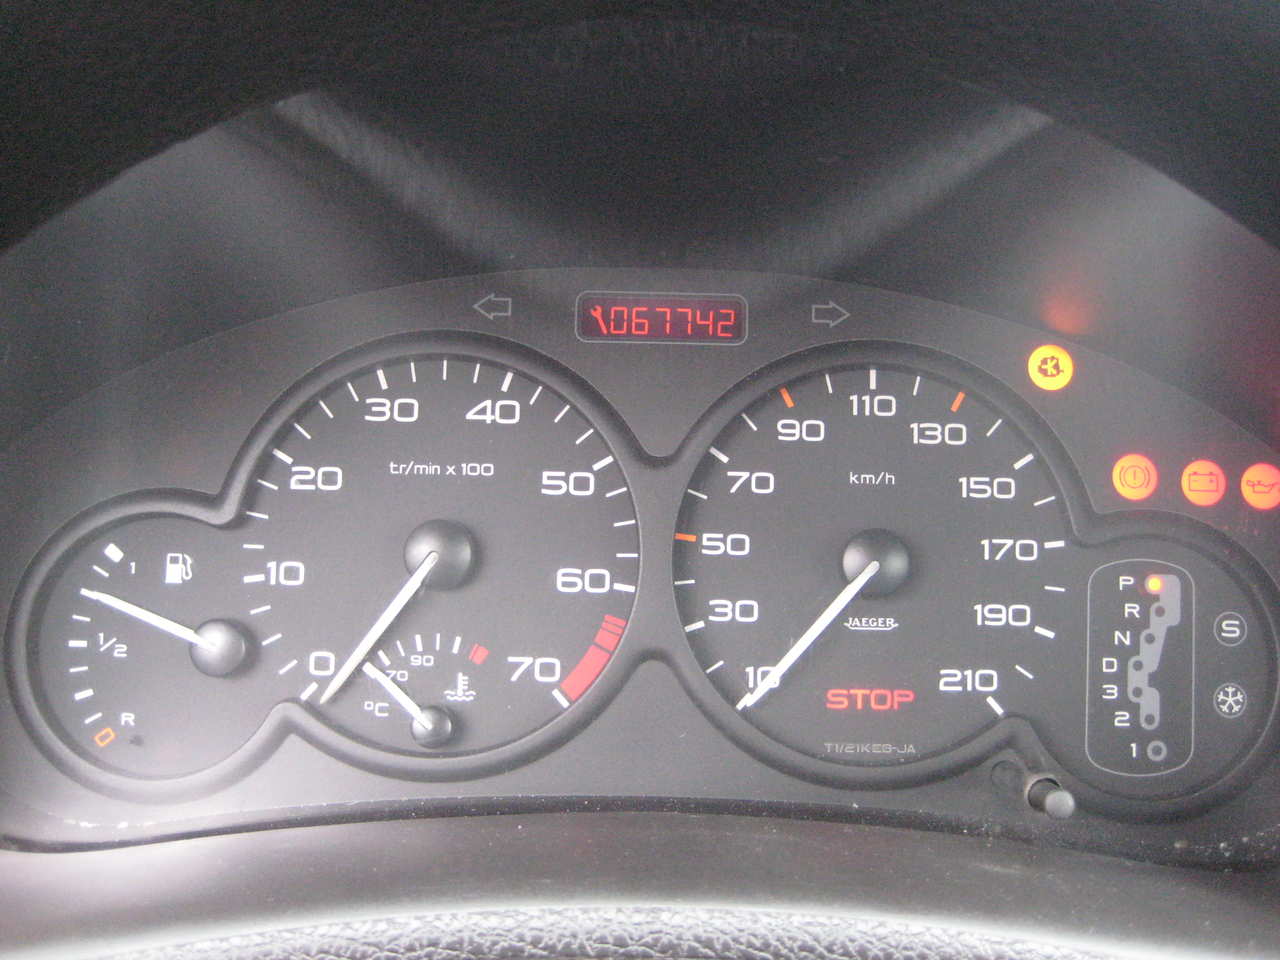 1999 Peugeot 206 specs, Engine size 1.3l., Fuel type